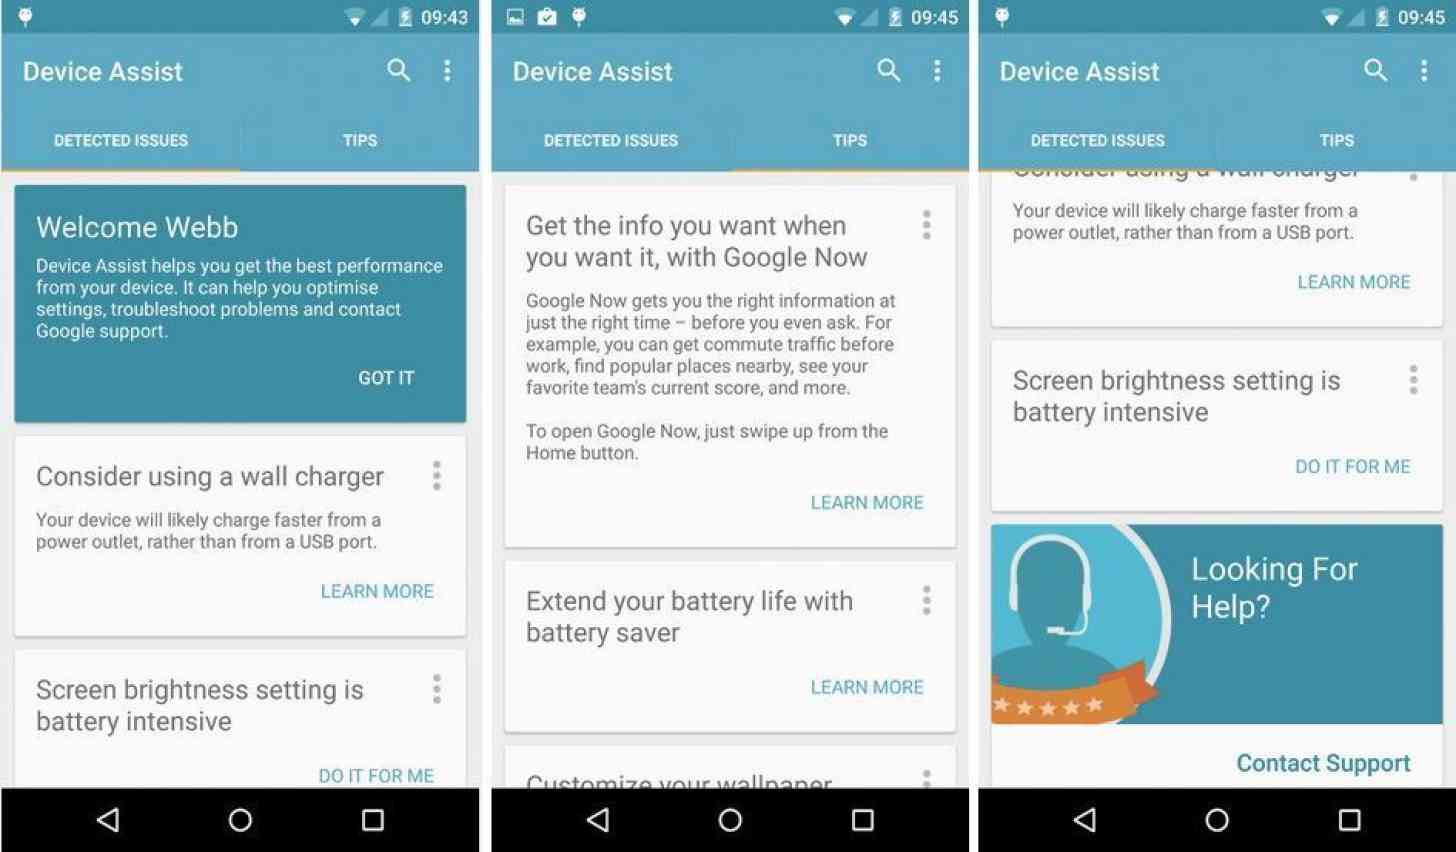 Google Assist Android app screenshots